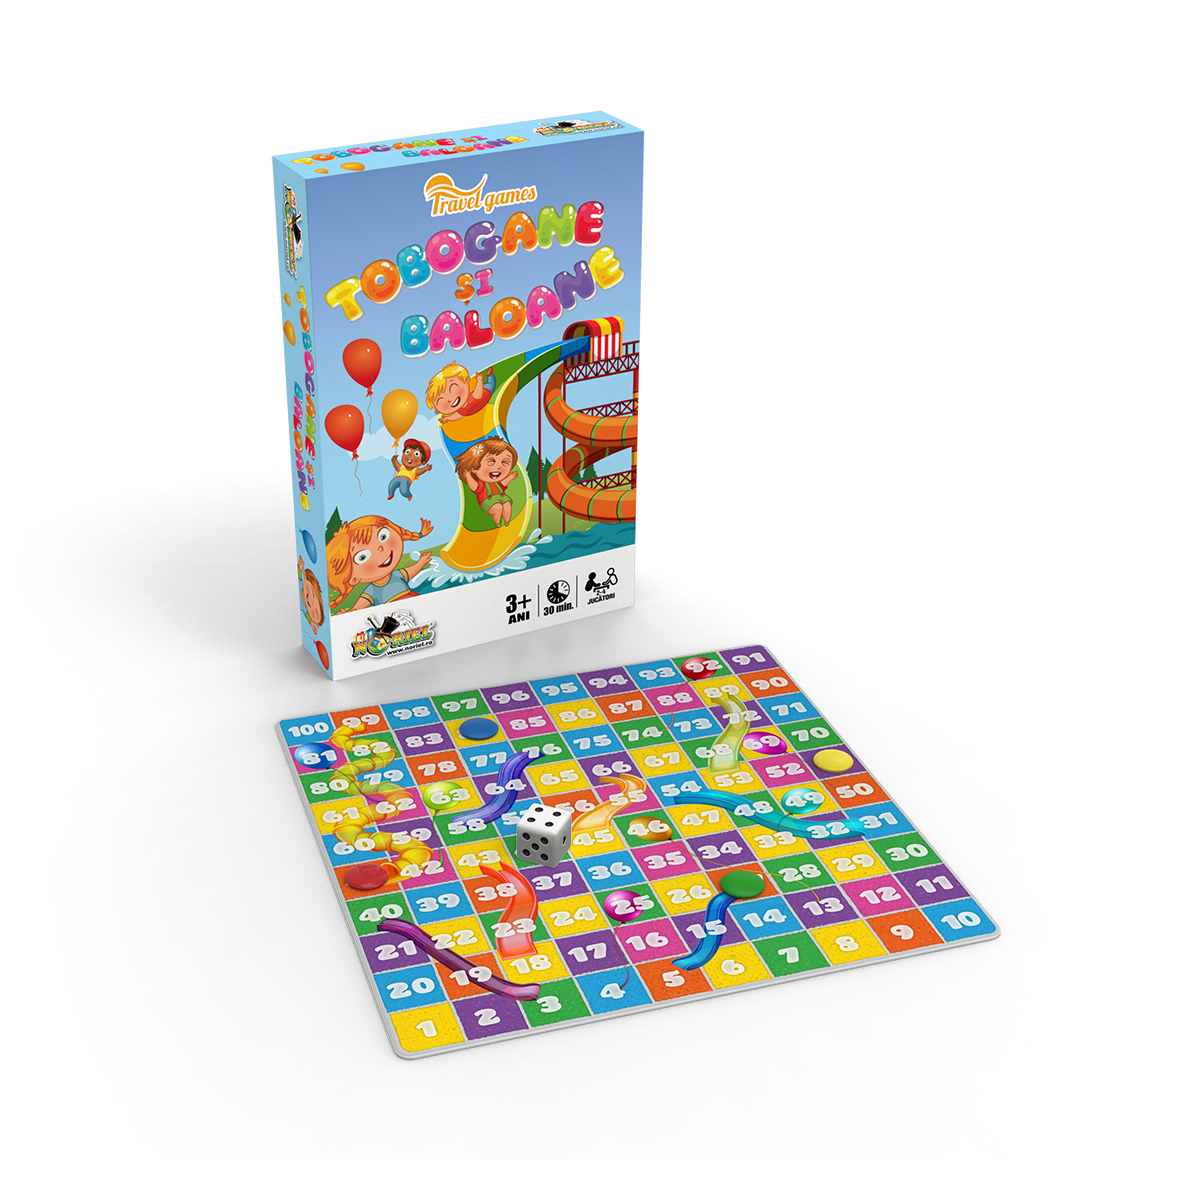 Joc de societate Noriel – Tobogane si baloane, Mini Noriel Games